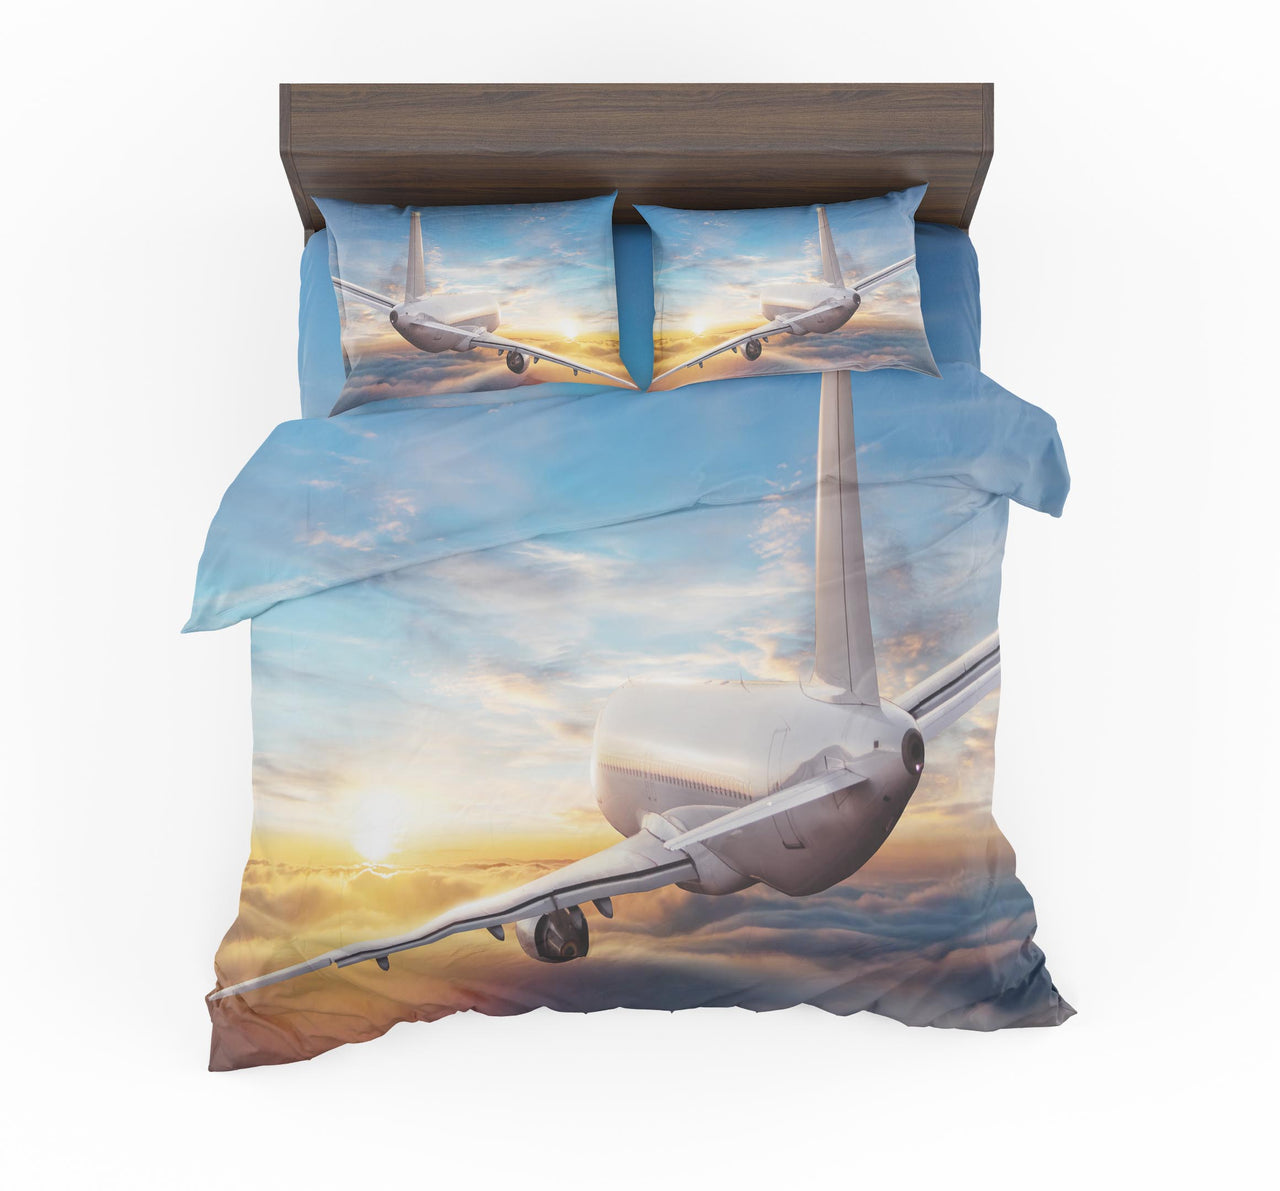 Airliner Jet Cruising over Clouds Designed Bedding Sets